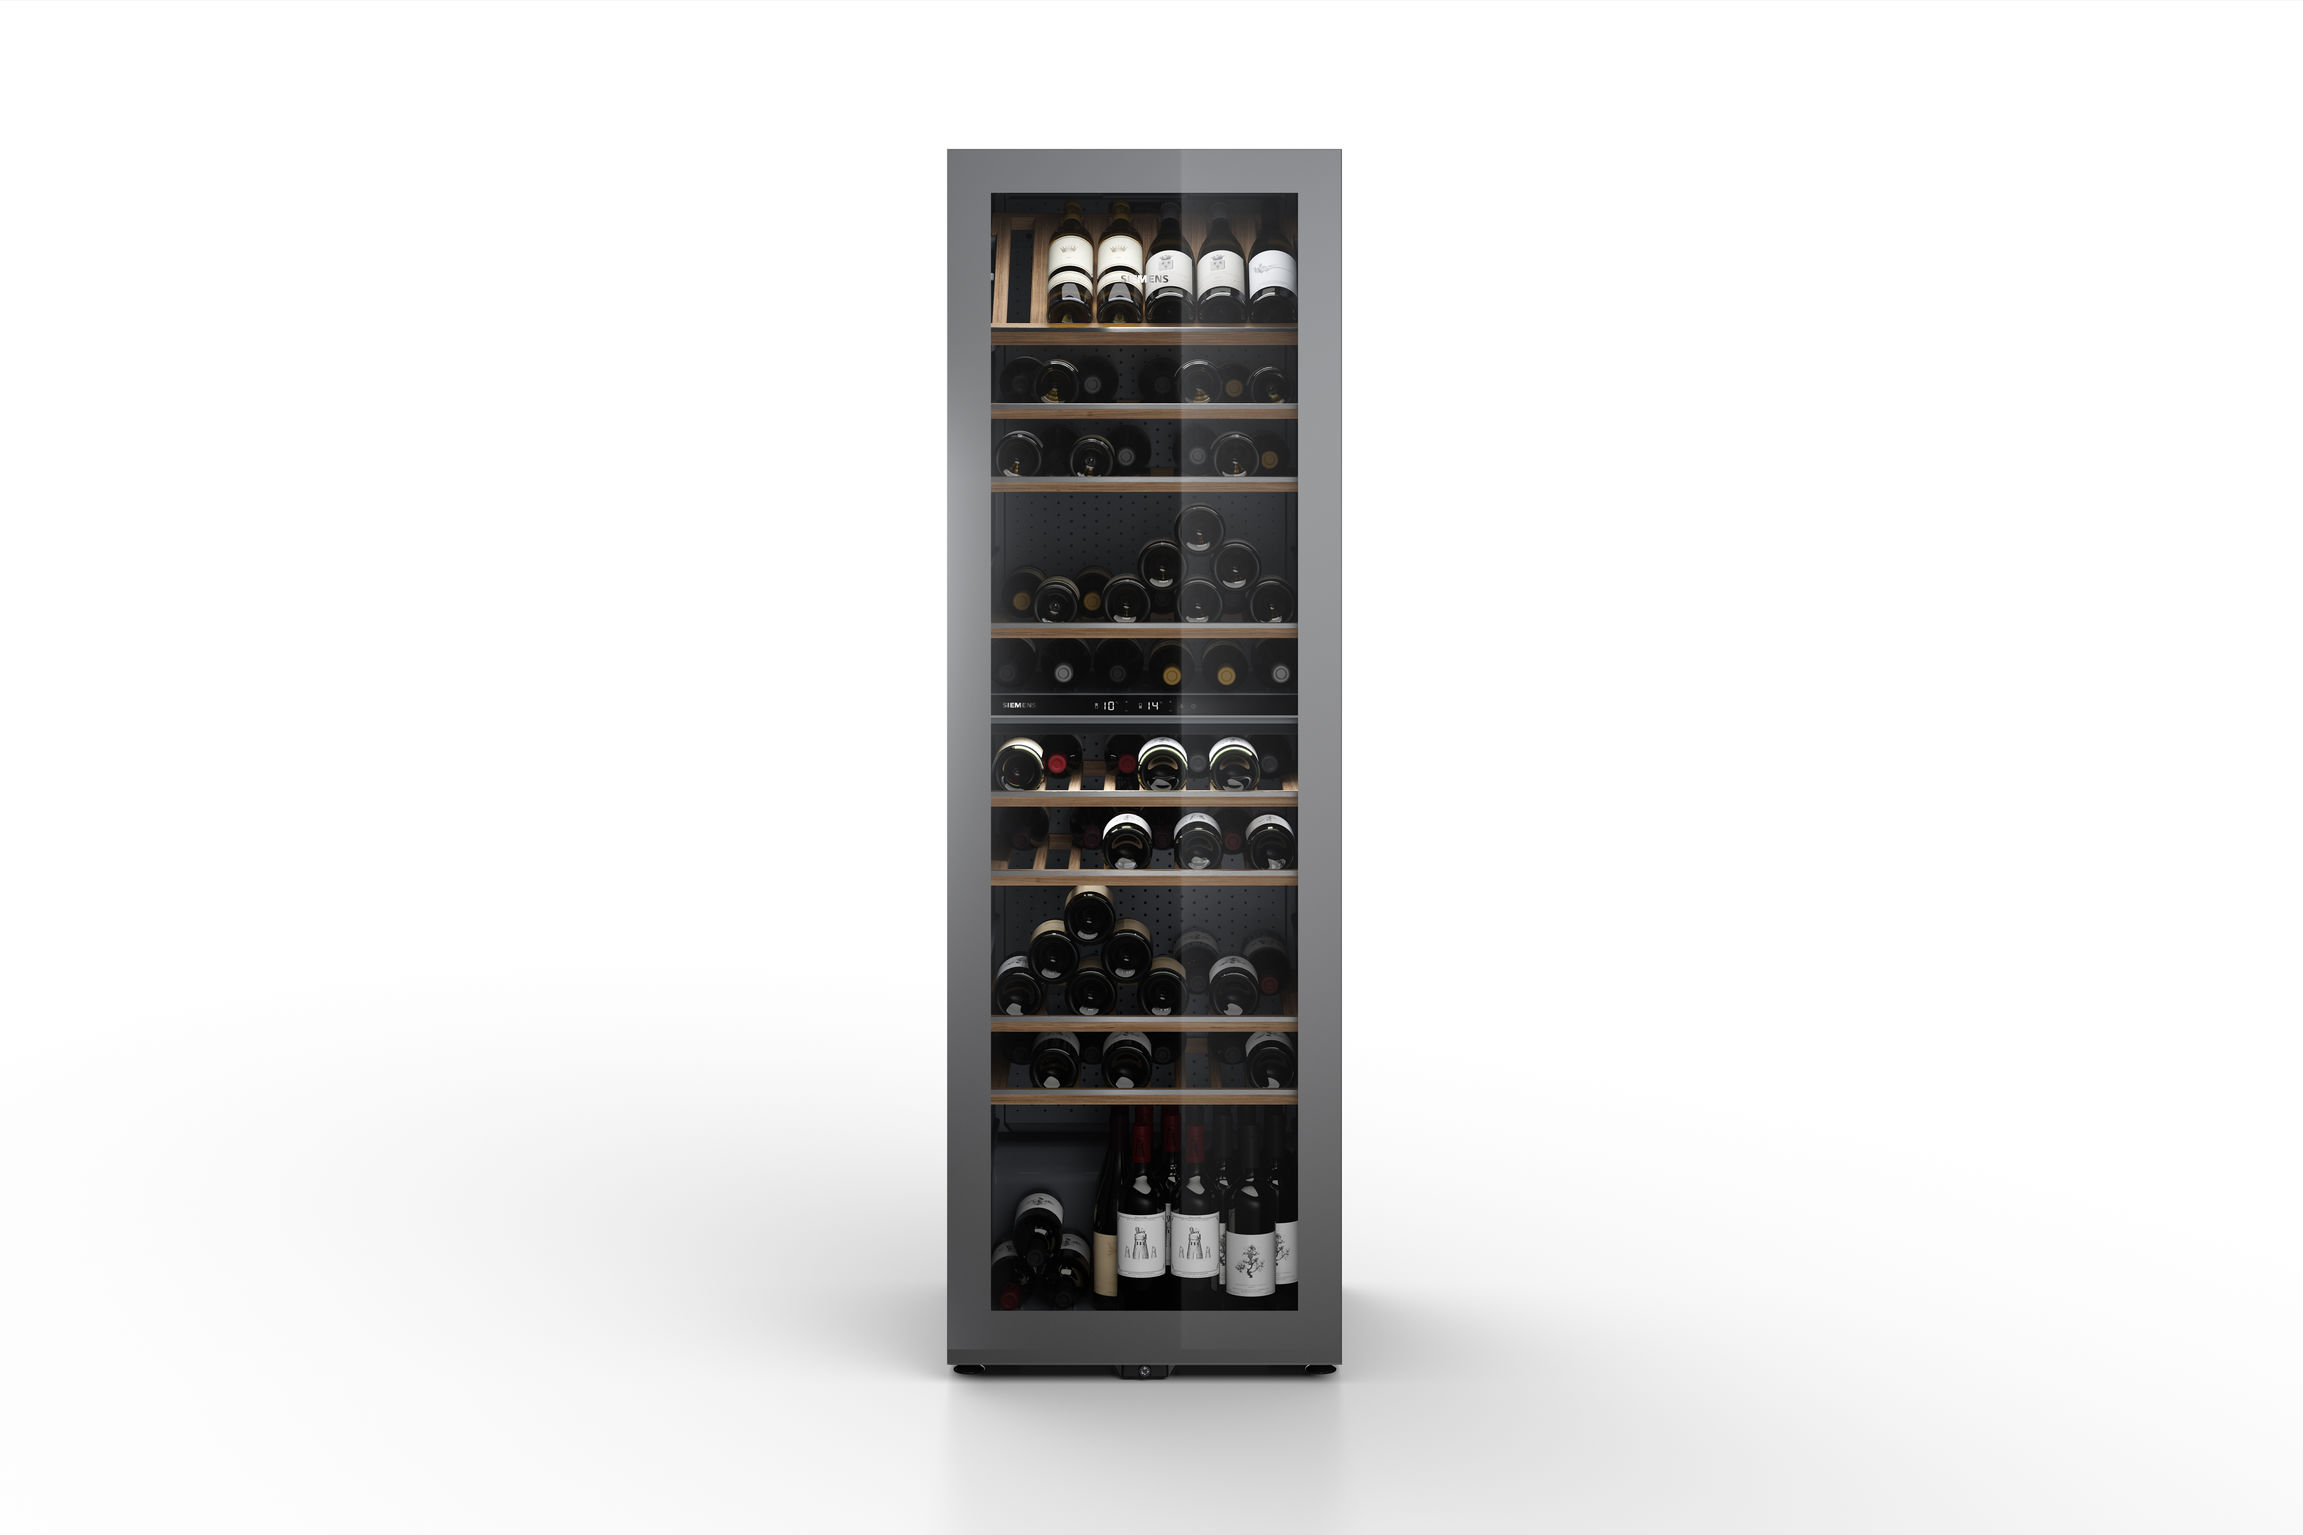 Siemens Freestanding Wine Cooler 186cm